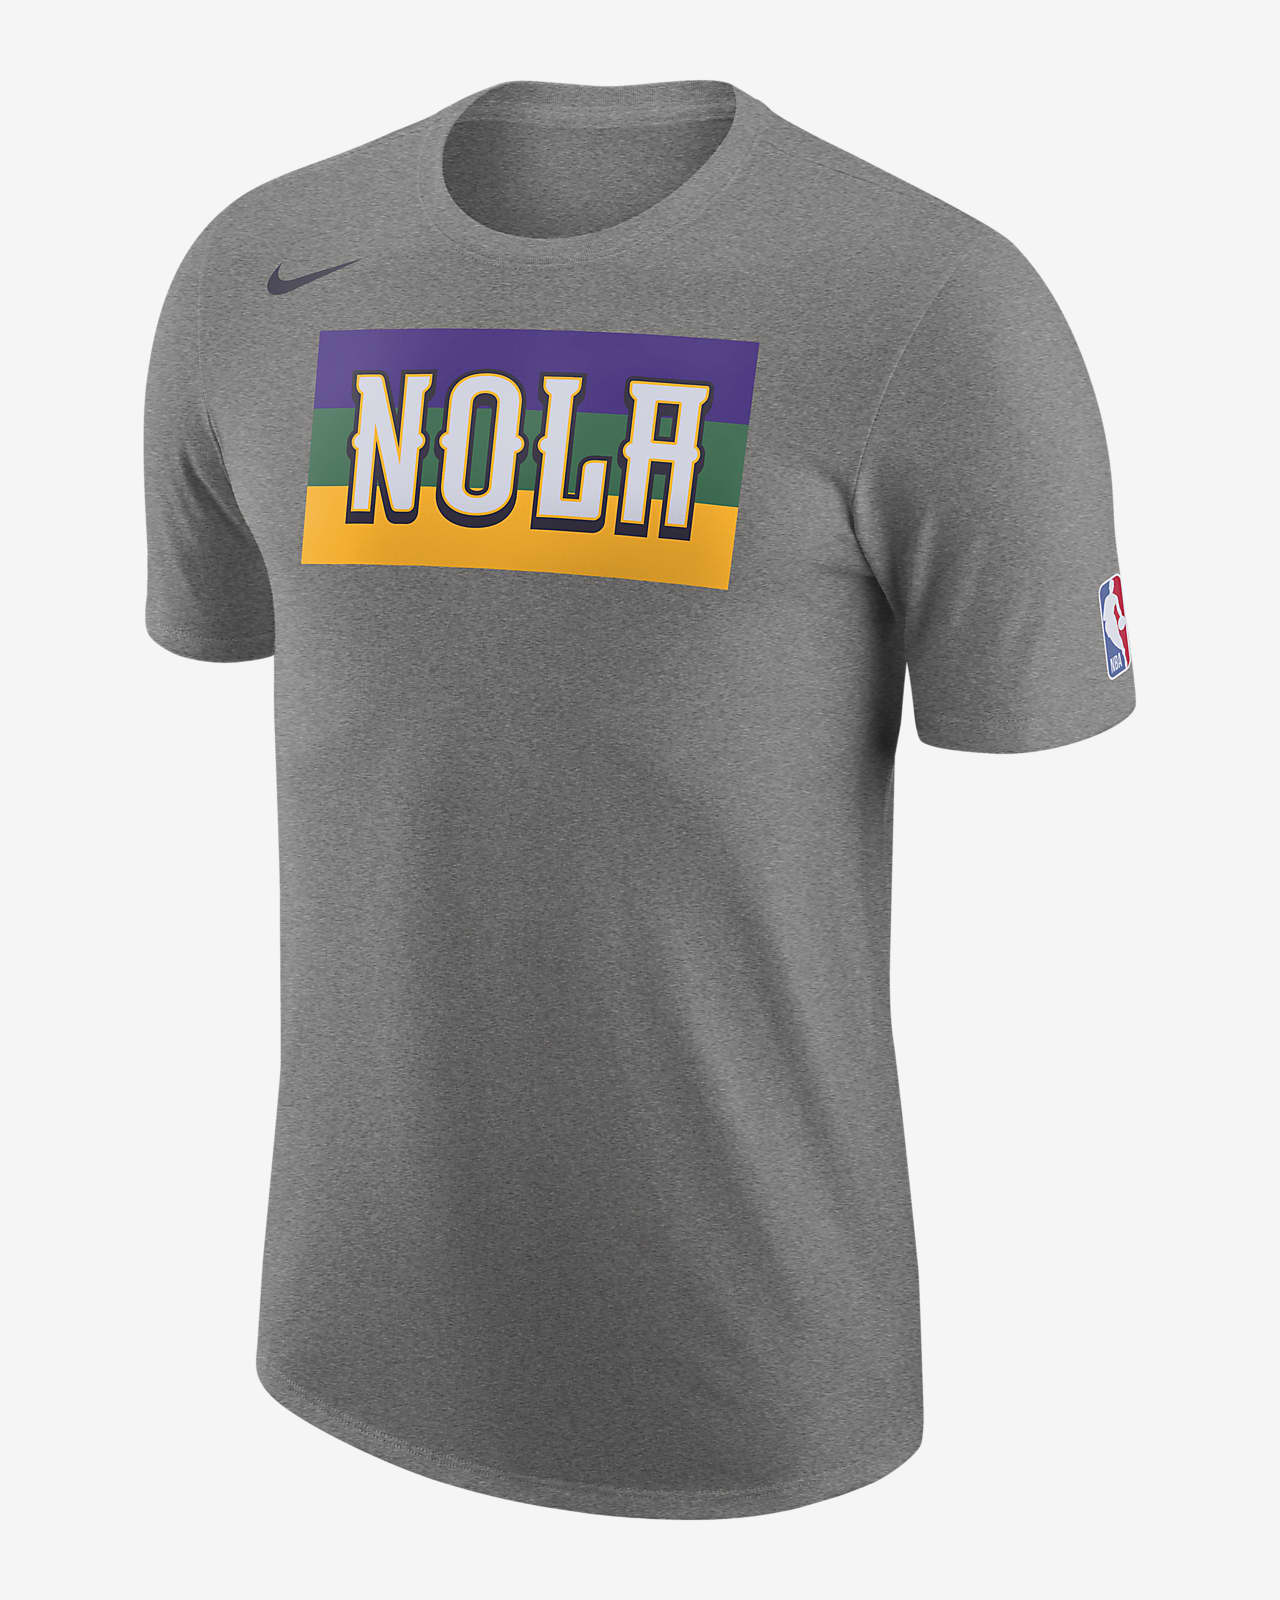 Playera con logotipo de la NBA Nike para hombre New Orleans Pelicans City Edition